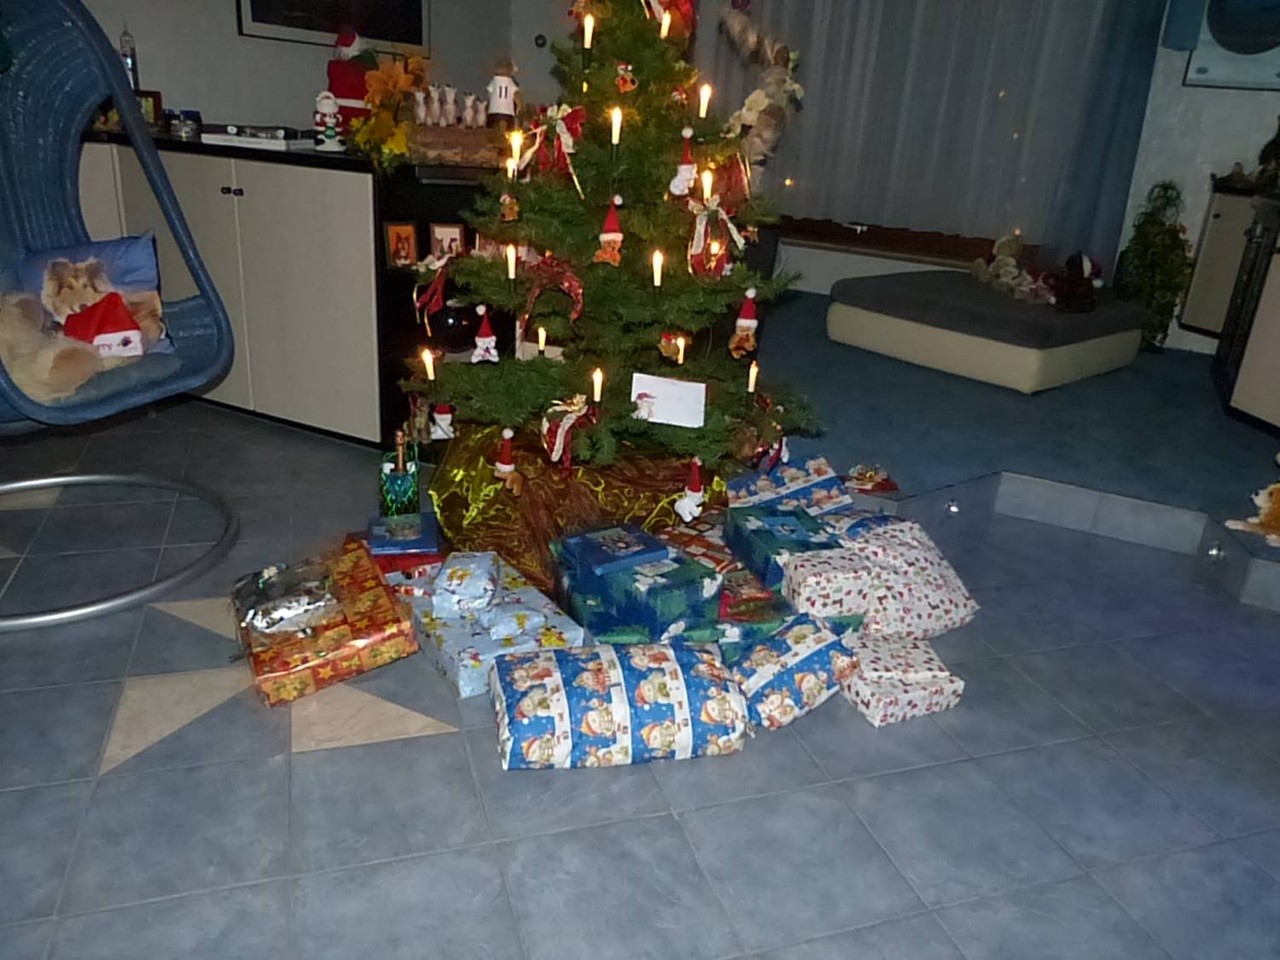 nun war der Weihnachtsmann da und hat Geschenke unter dem Baum gelegt